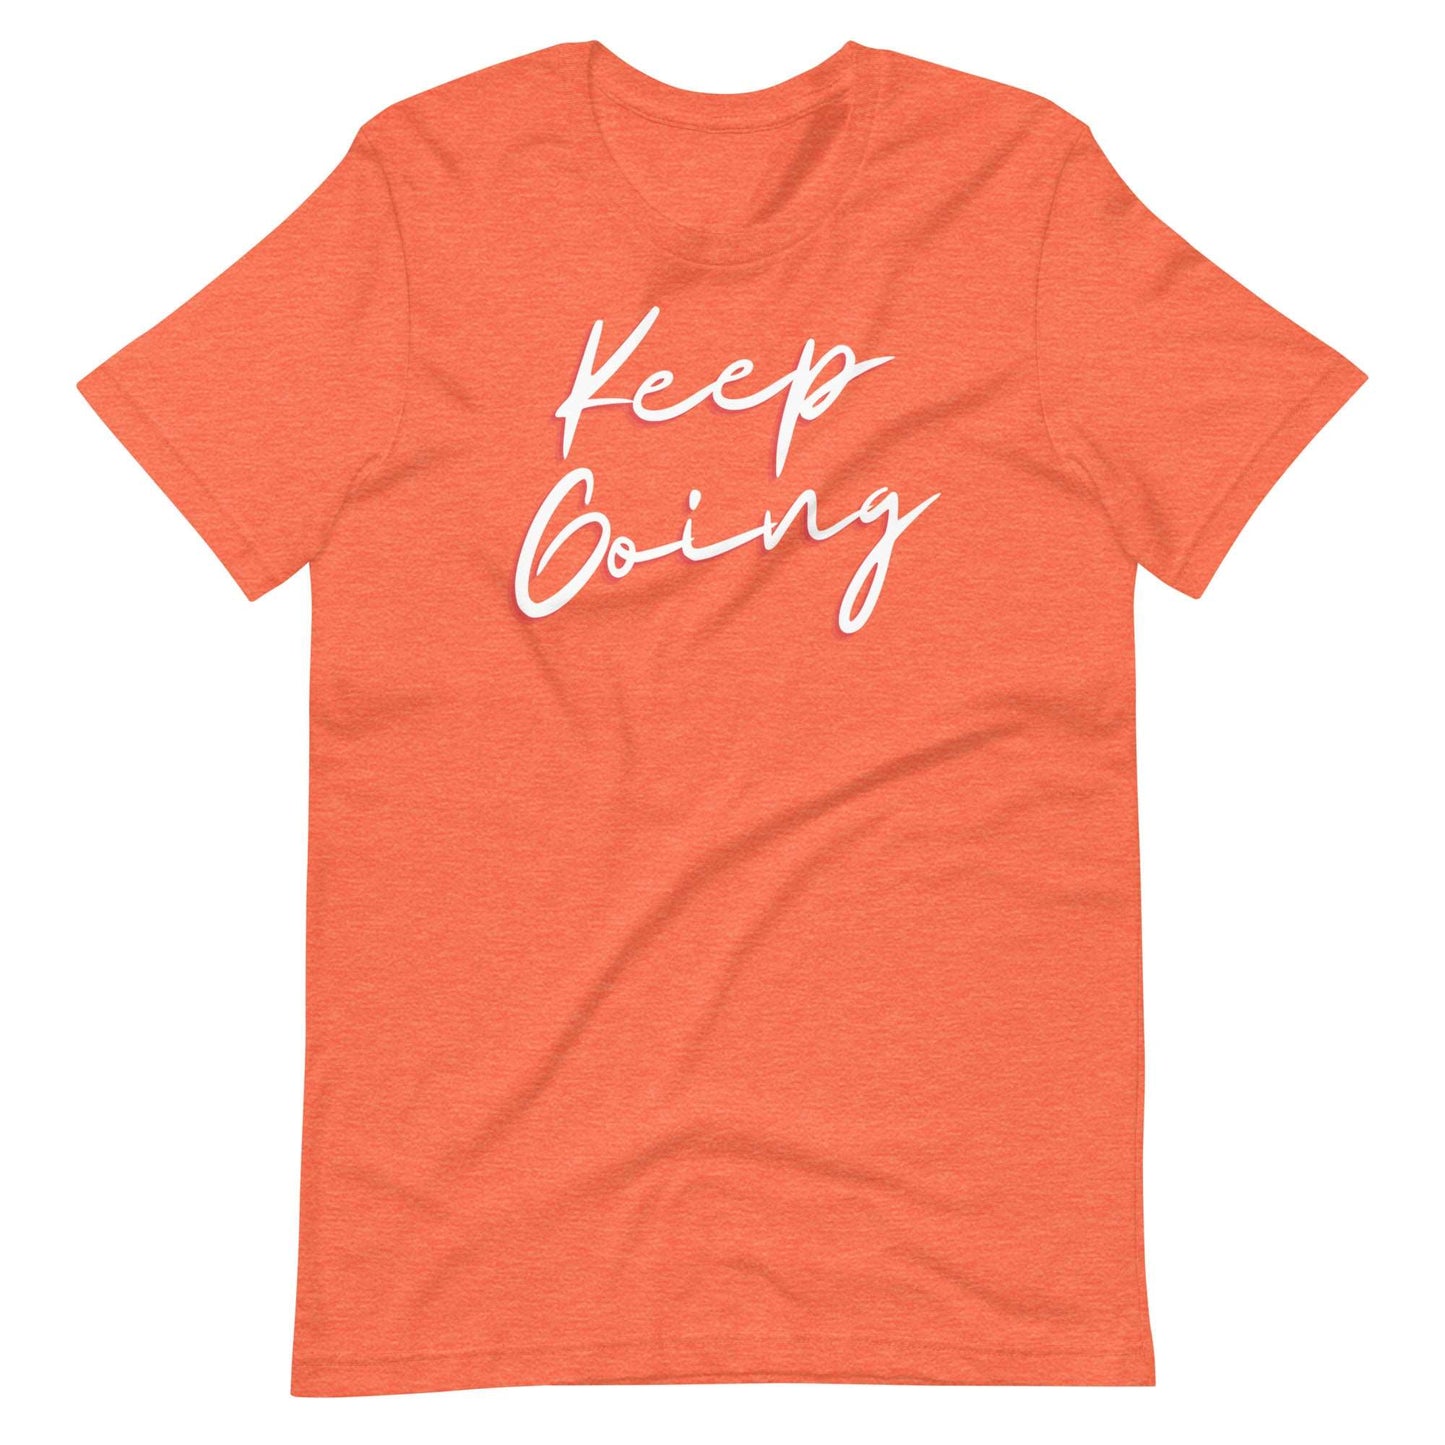 Keep Going! T-Shirt